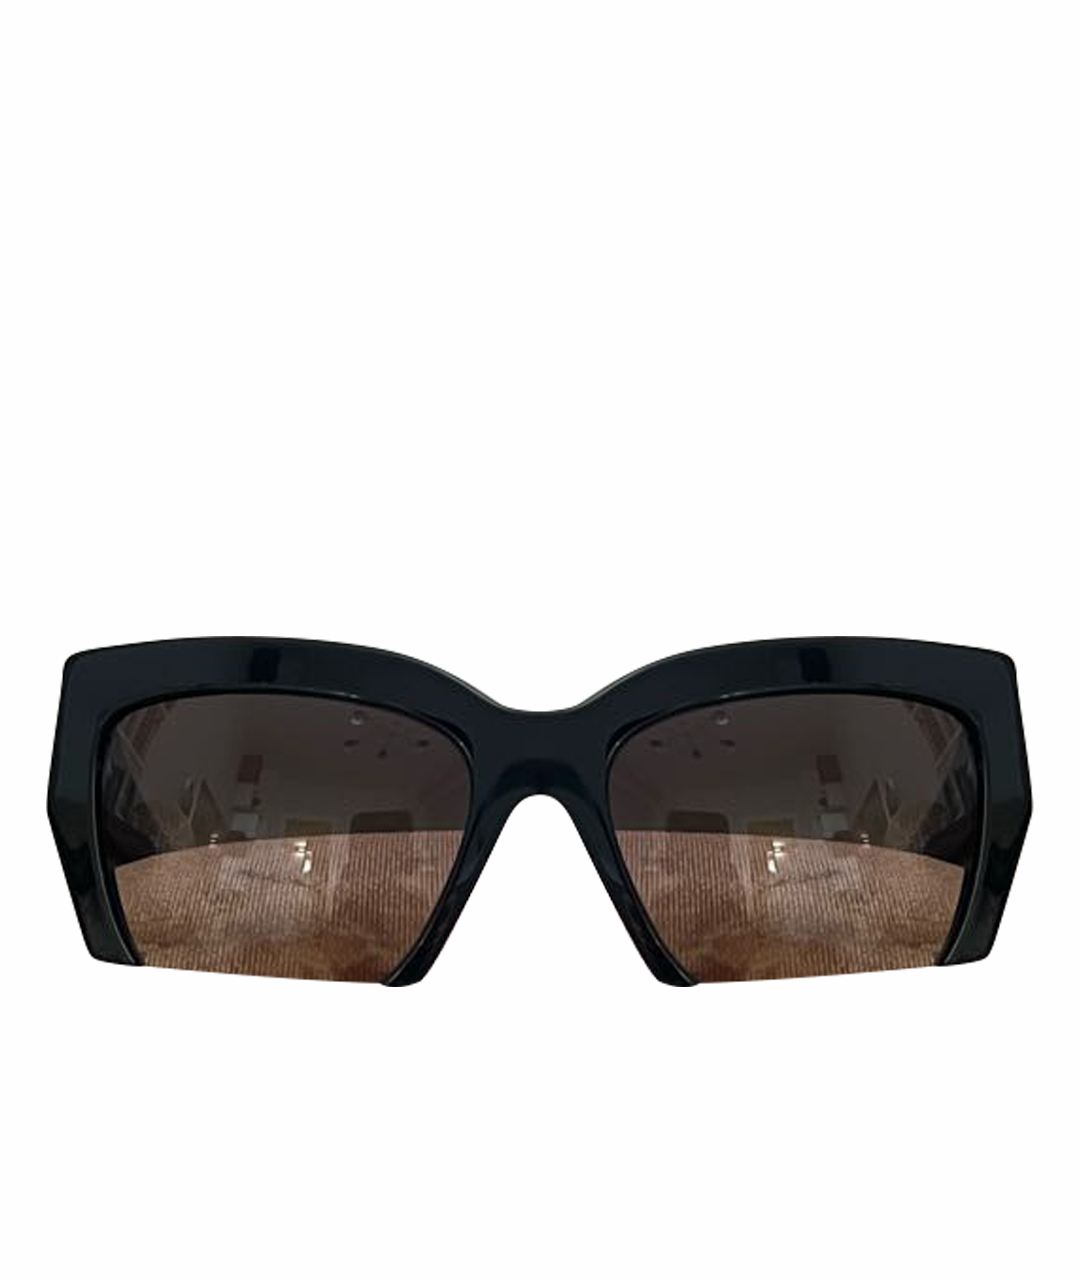 MIU MIU Черные пластиковые солнцезащитные очки, фото 1